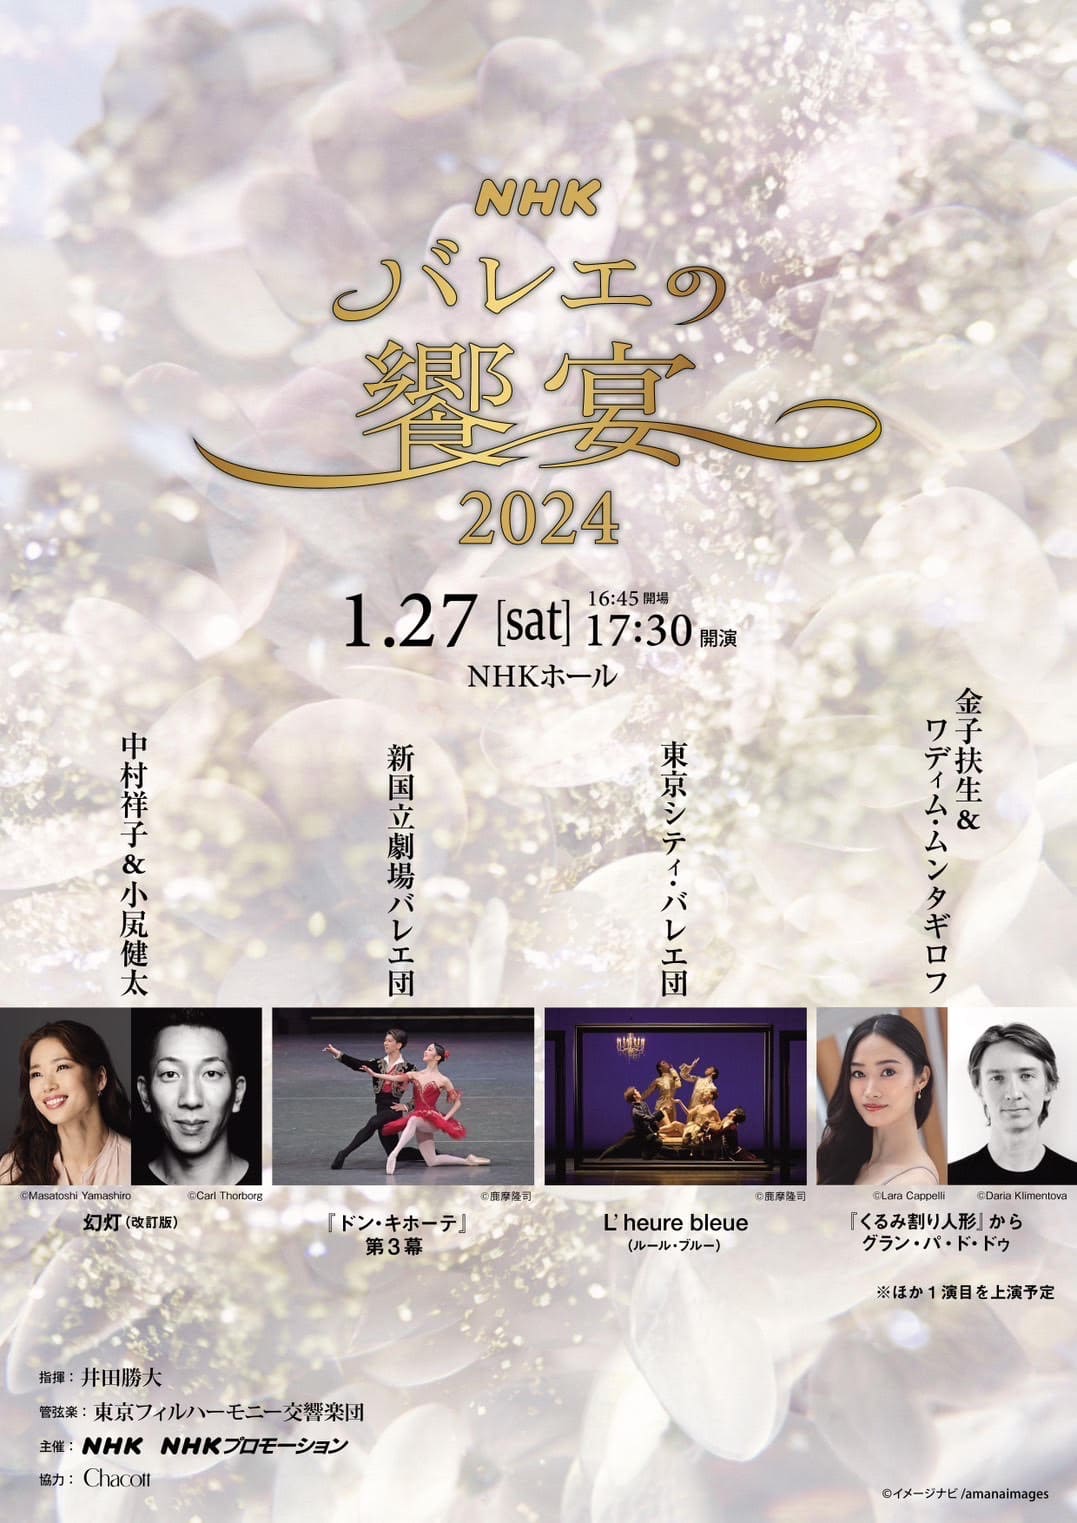 NHKバレエの饗宴2024に出演が決定